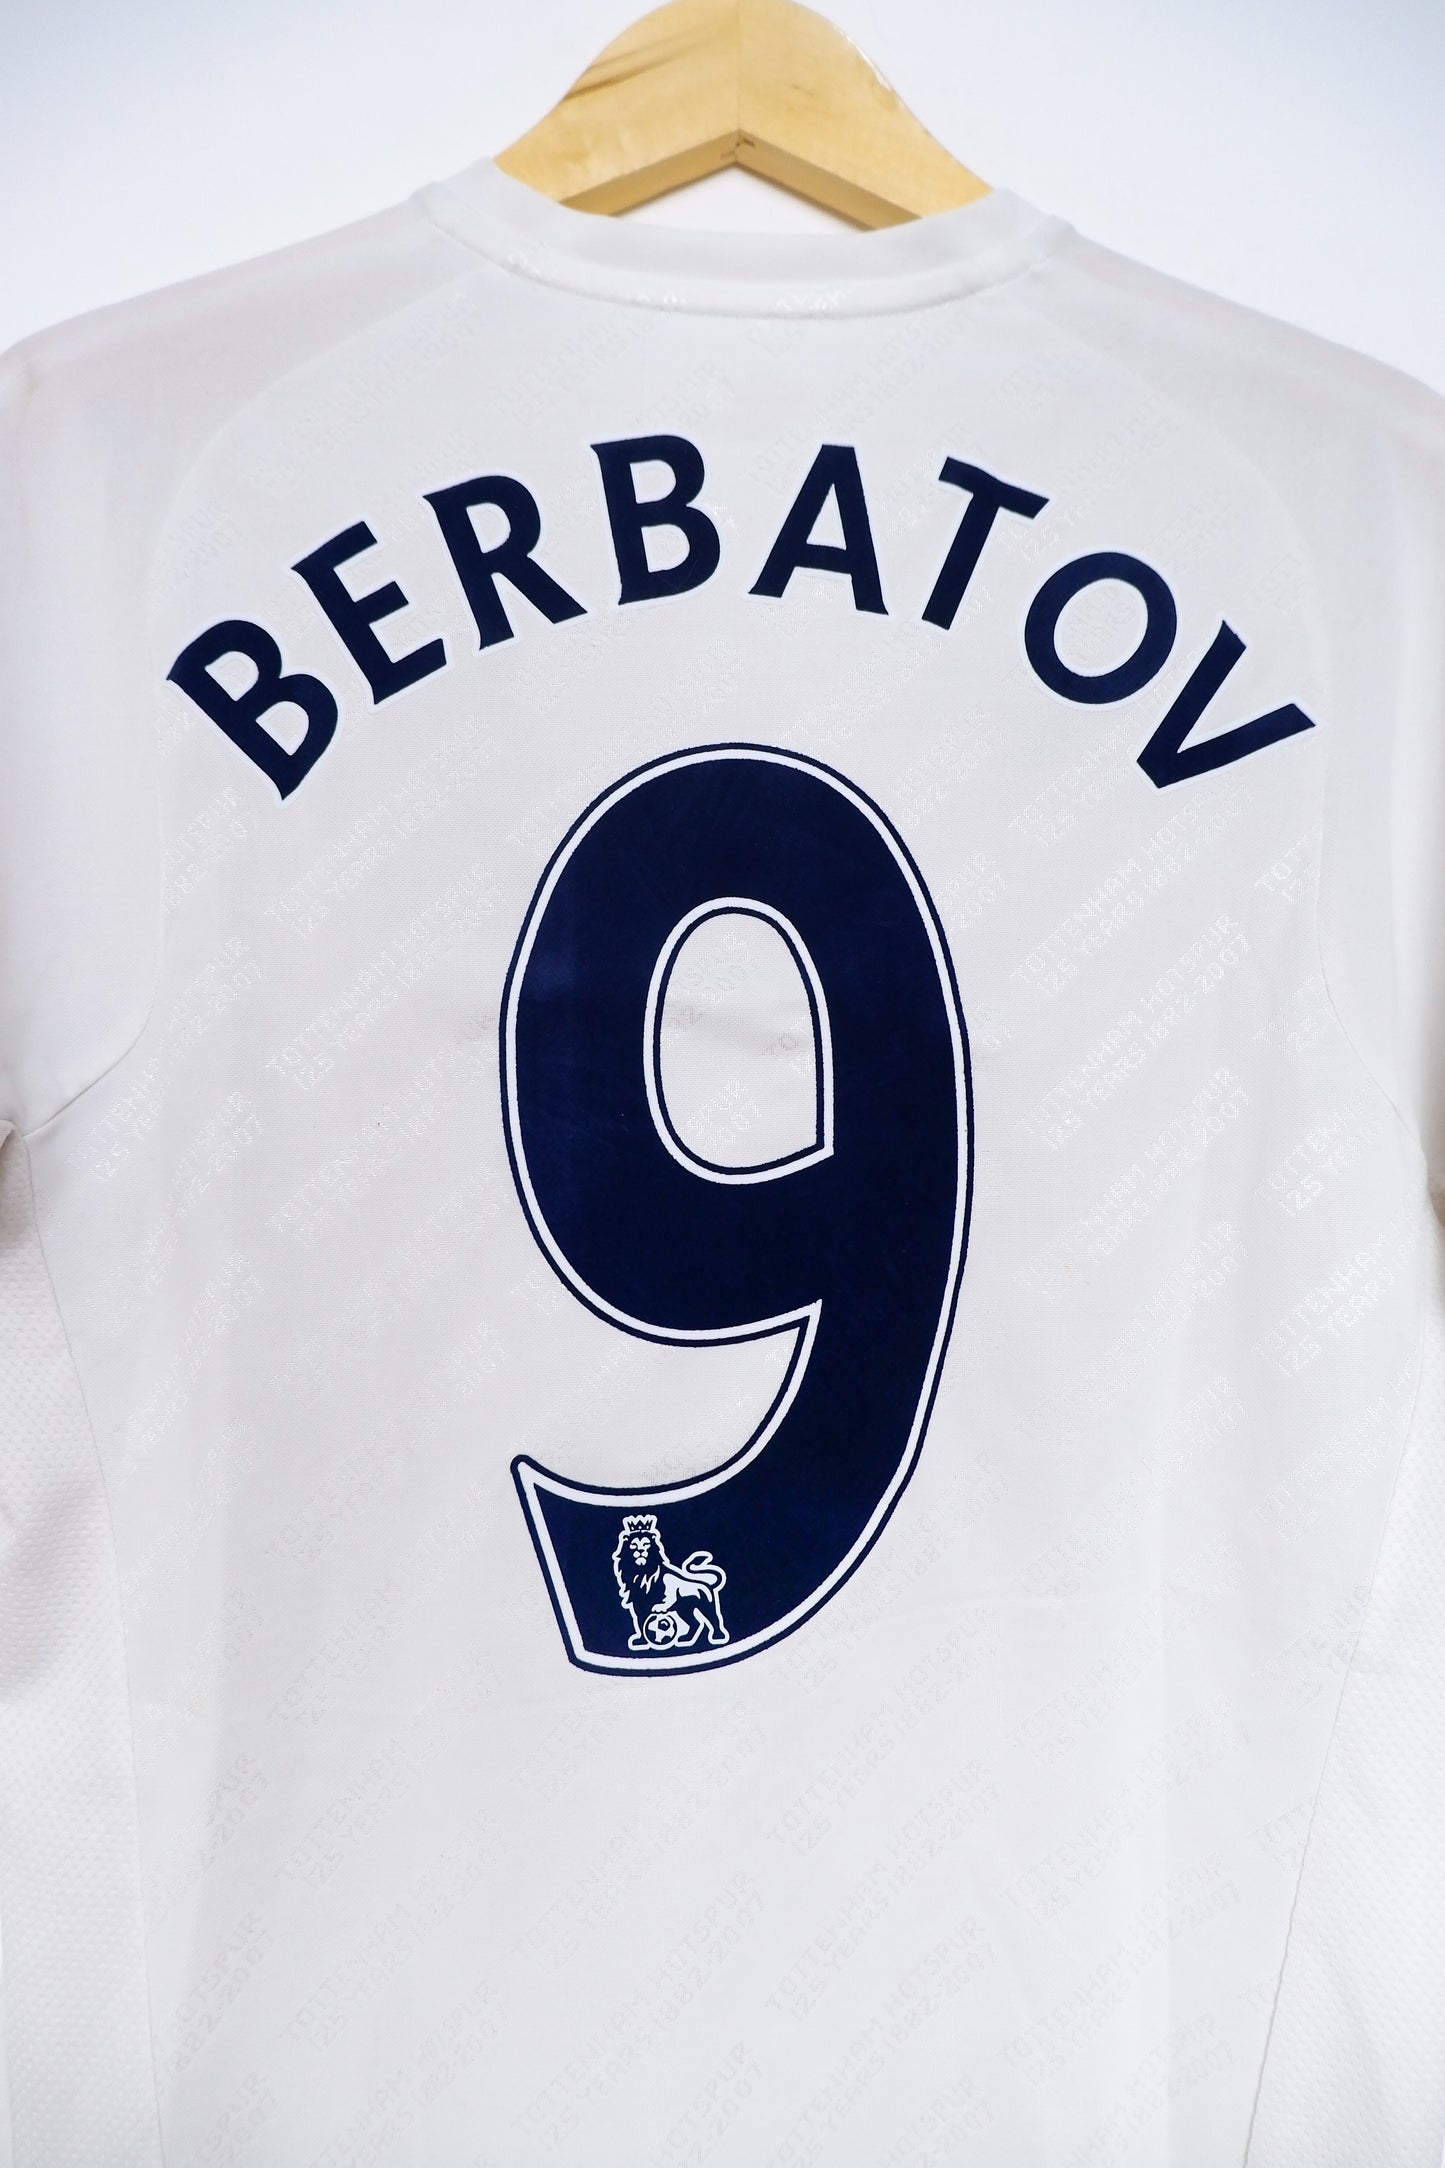 Authentic Tottenham Hotspur 2007/08 - Dimitar Berbatov #9 Size M